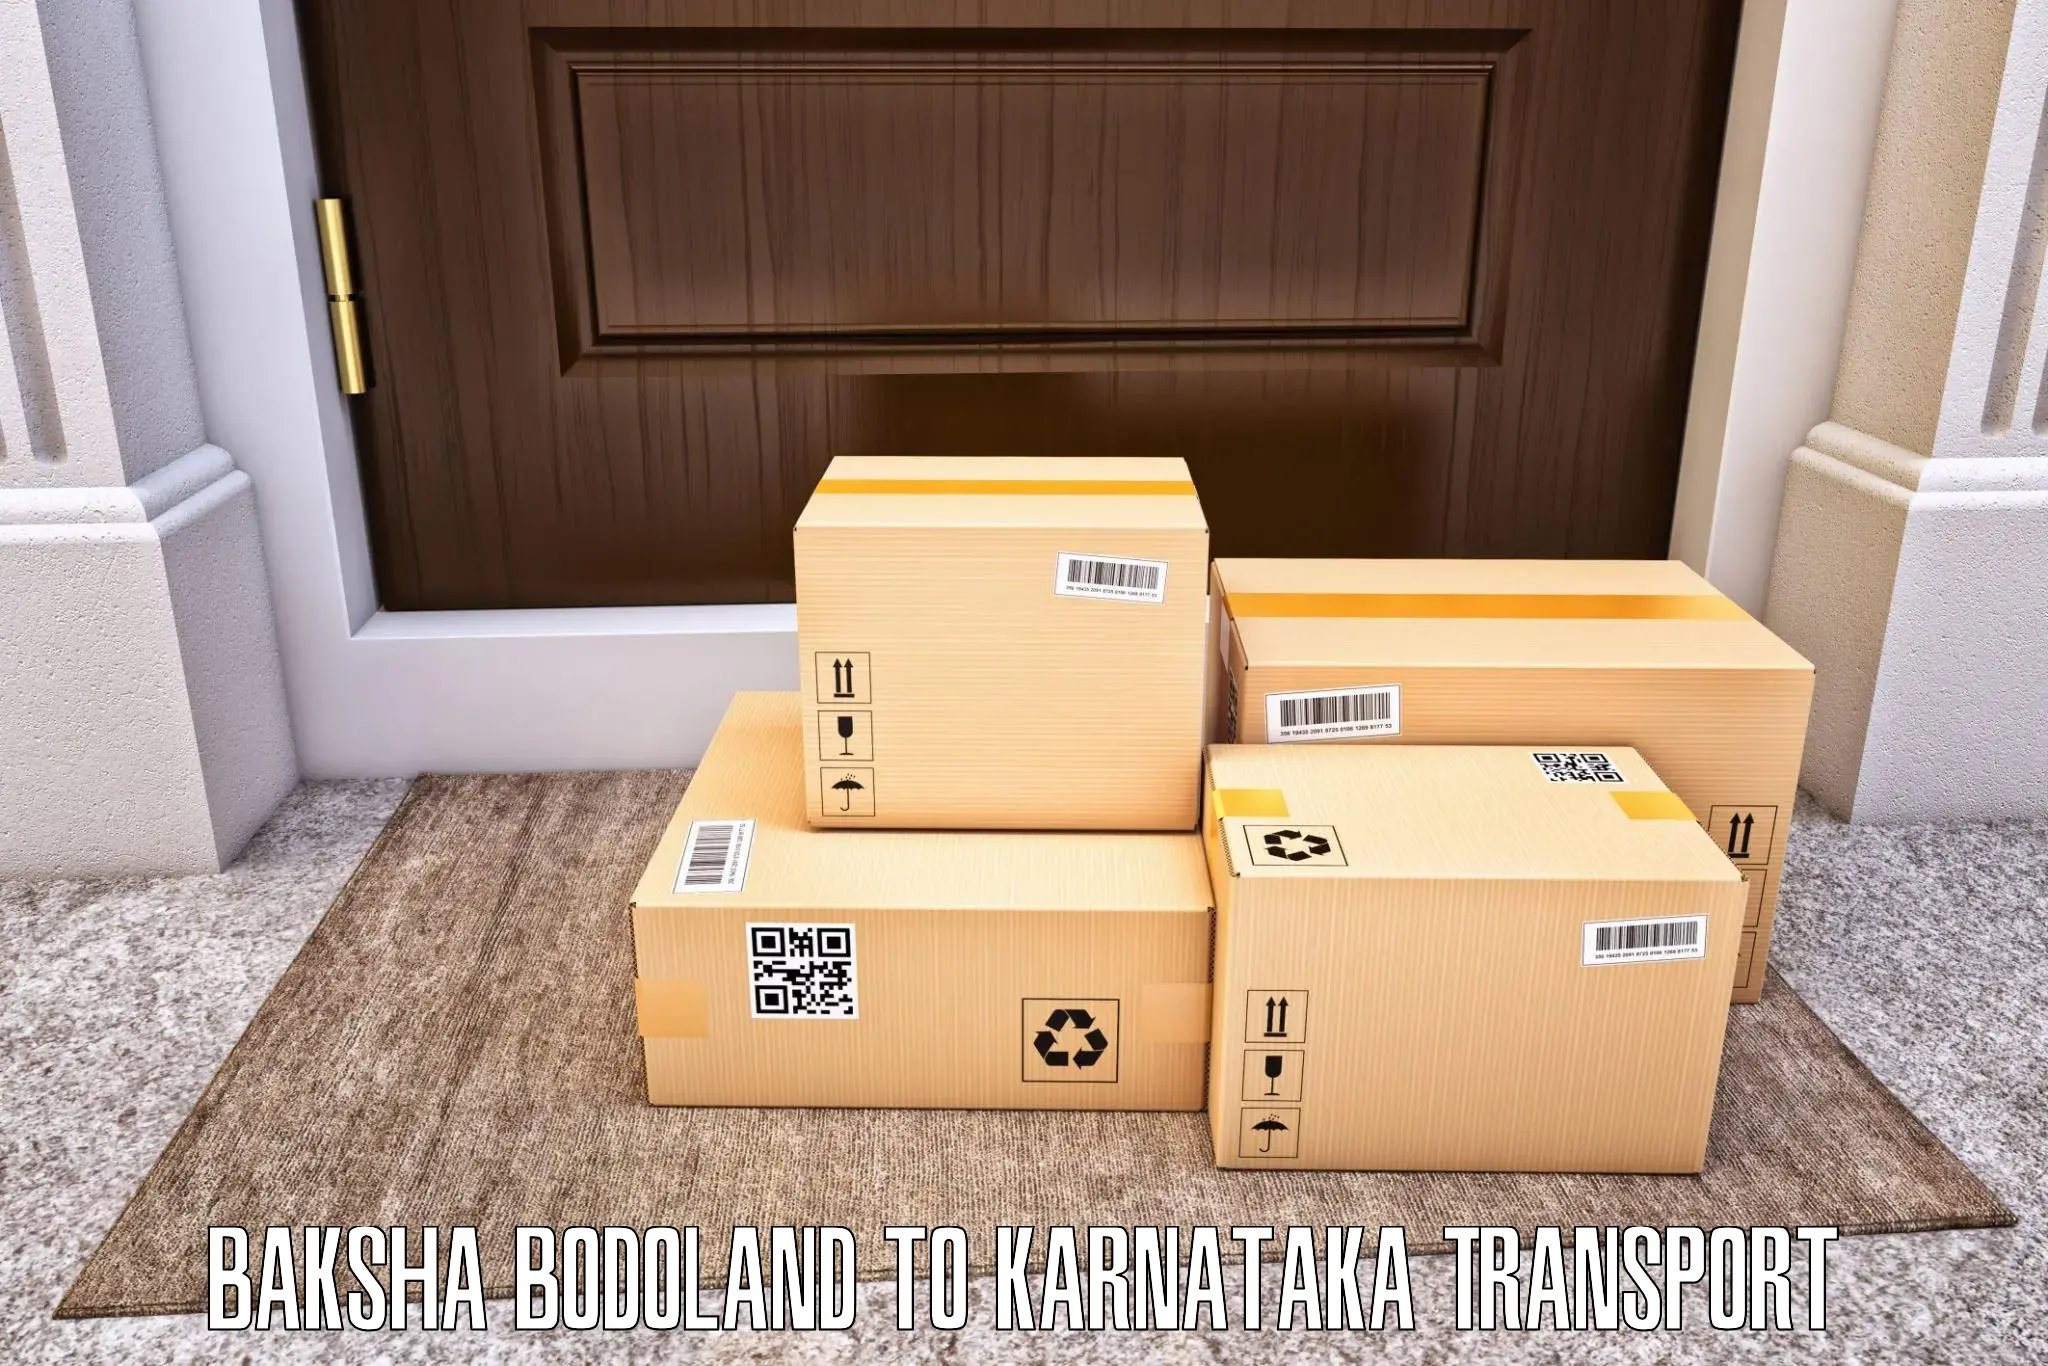 Two wheeler parcel service Baksha Bodoland to Sindhanur